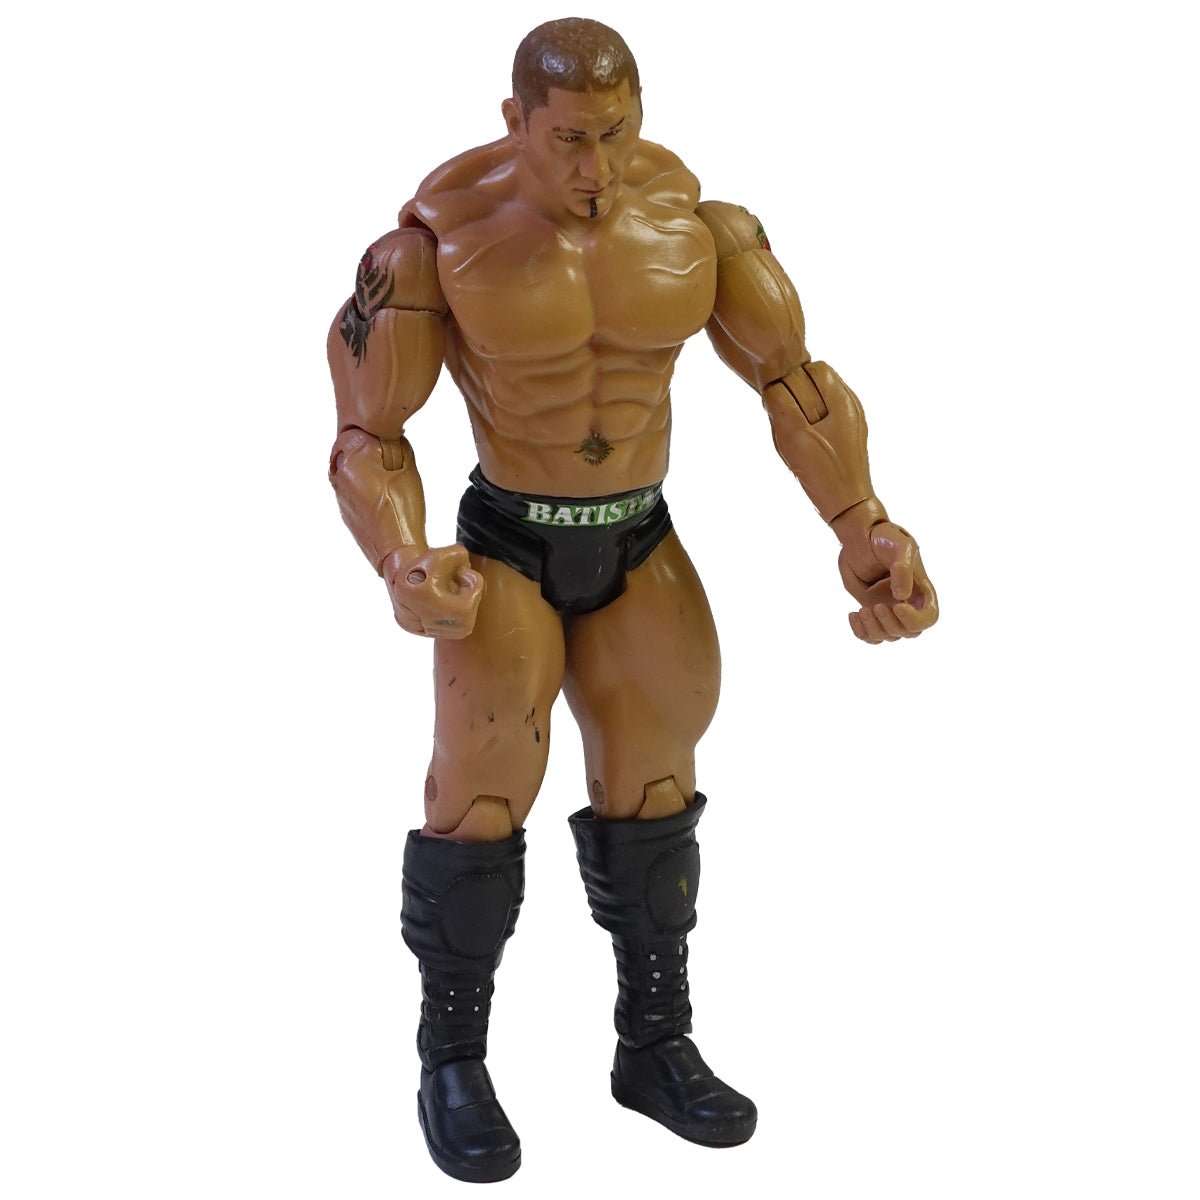 (Pre-Owned) Figurines - WWE Batista - دمية - Store 974 | ستور ٩٧٤